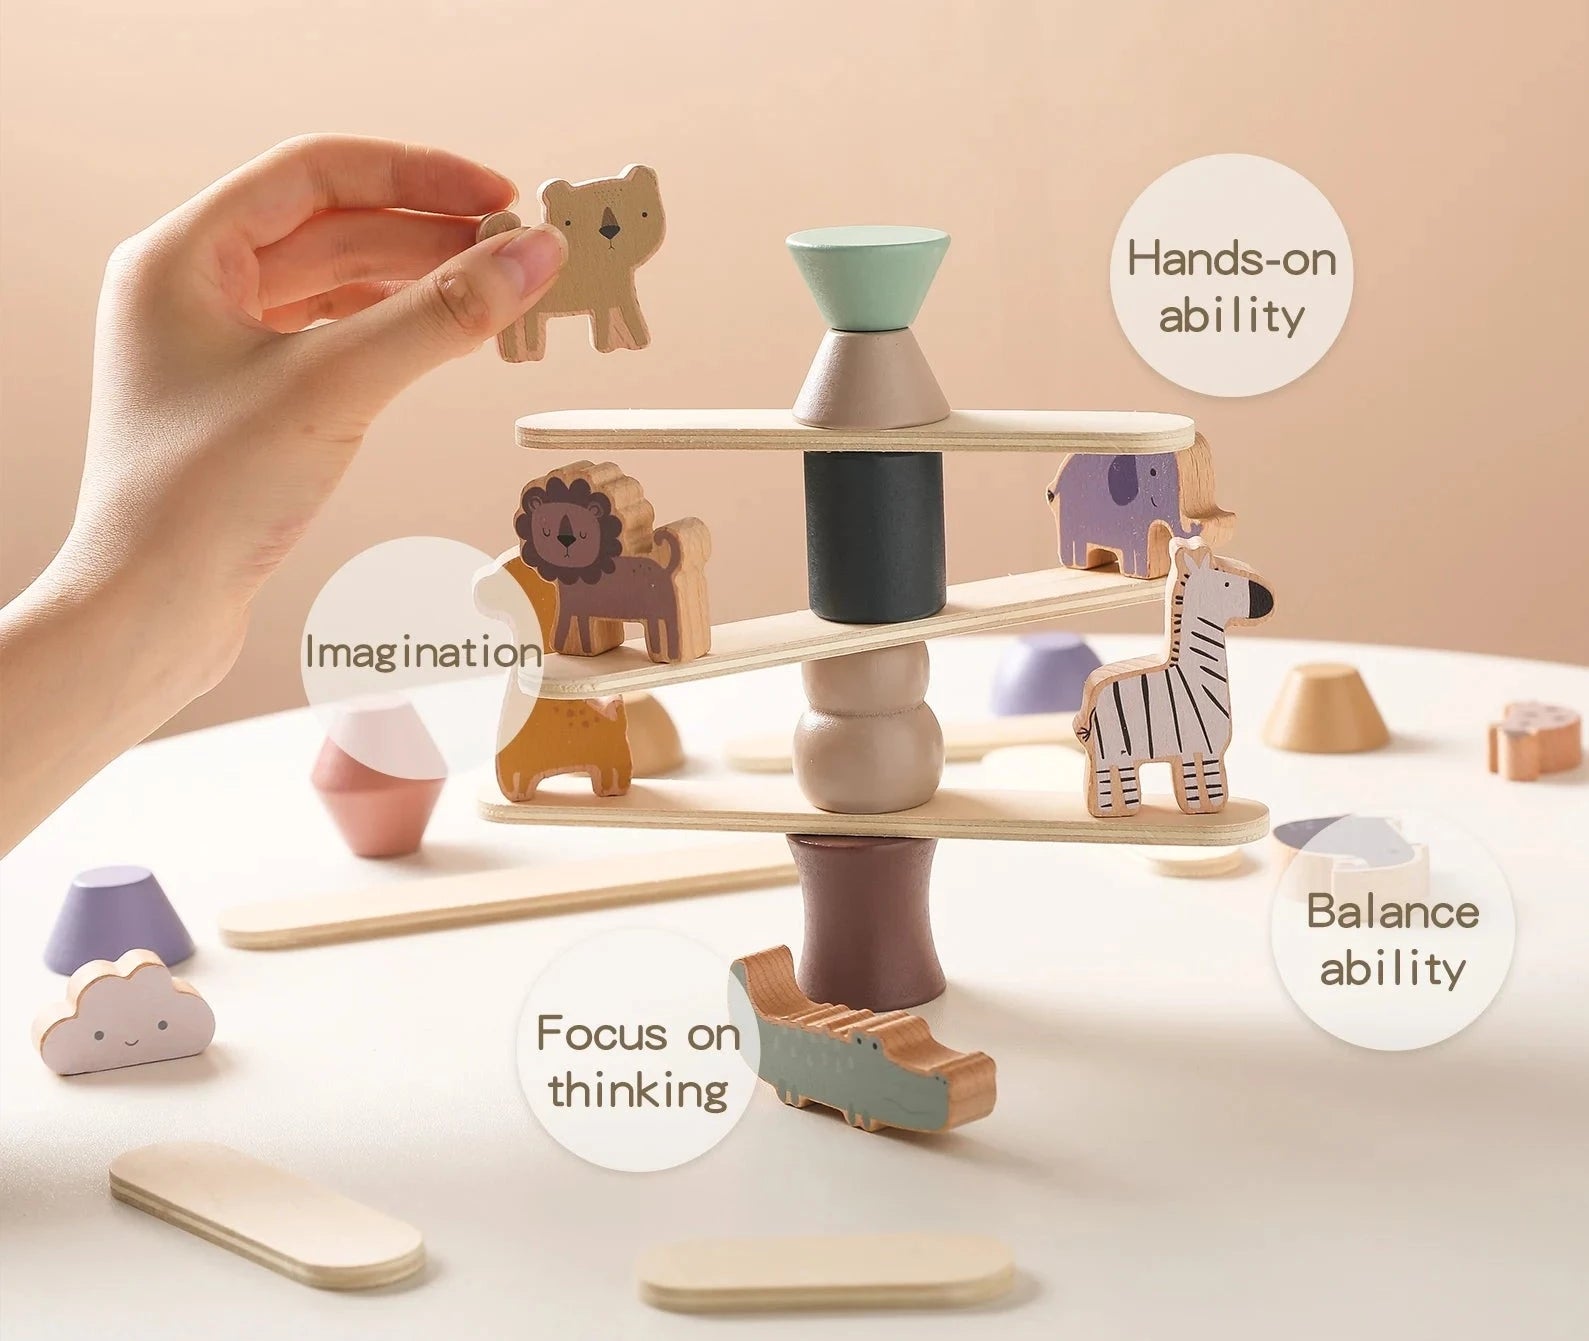 Jeu d'équilibre en bois inspiration Montessori pour enfant 